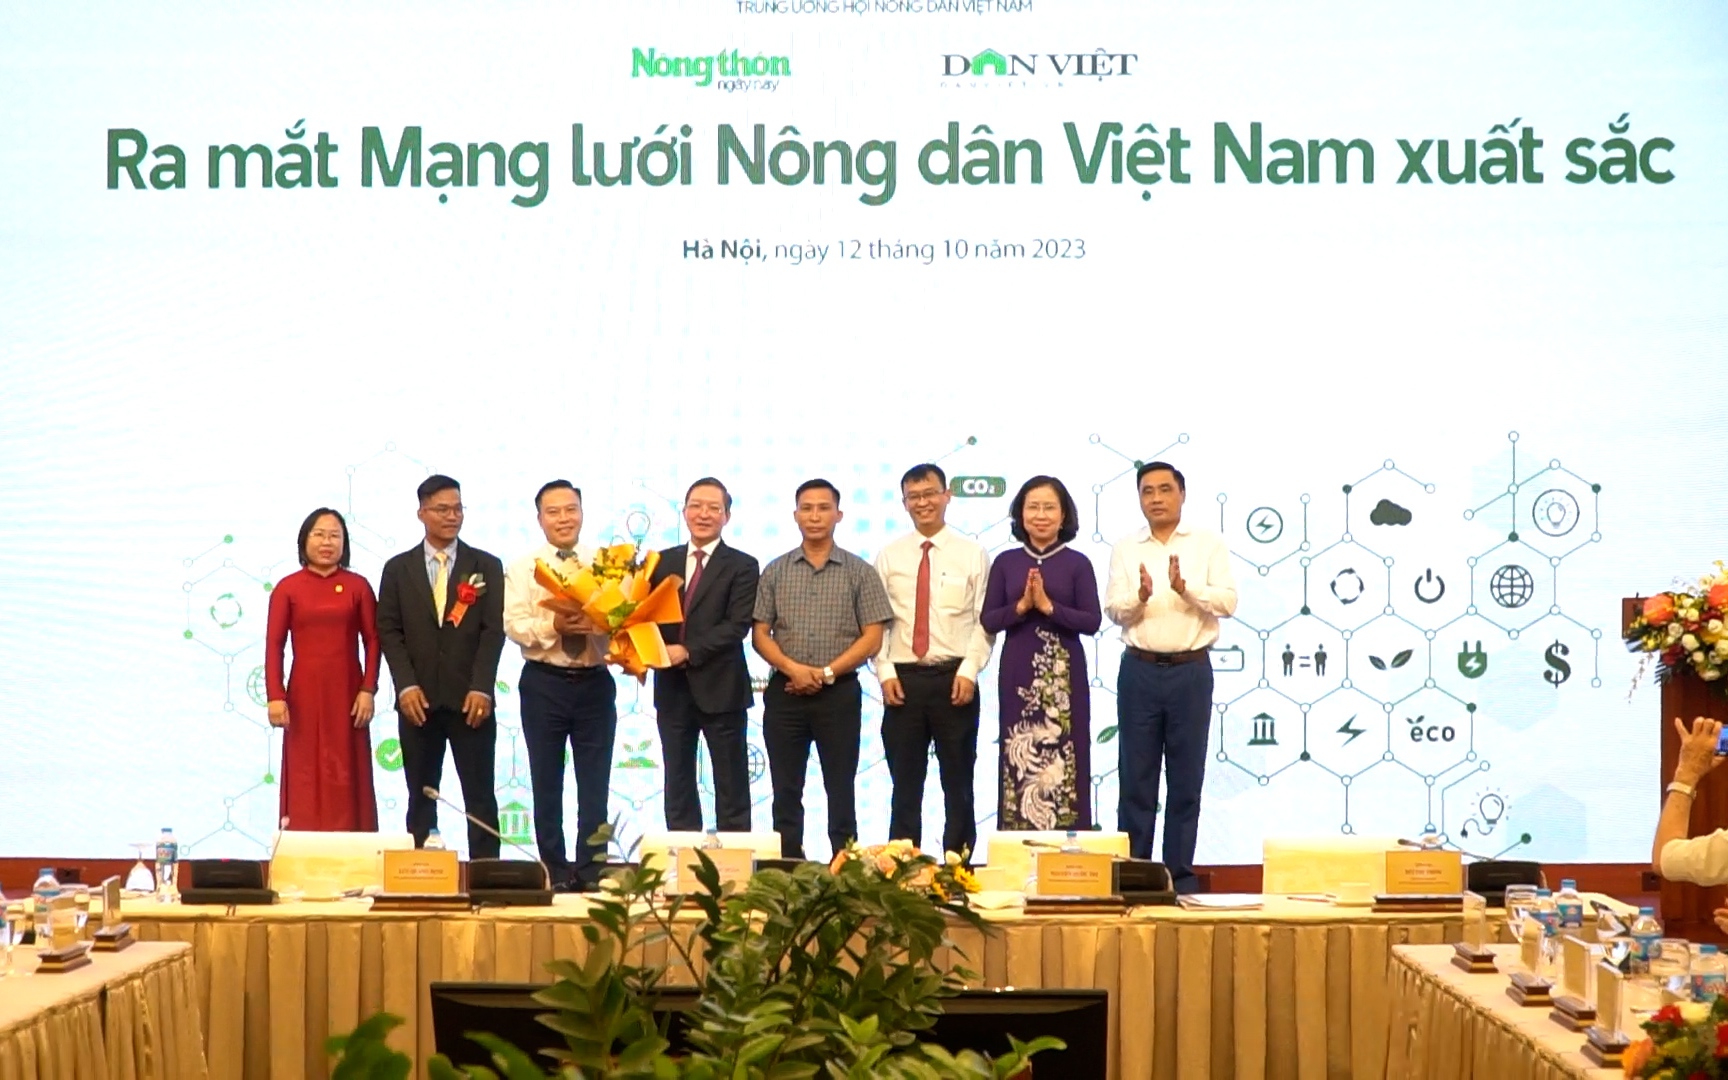 Ra mắt Mạng lưới Nông dân Việt Nam xuất sắc: Học được ý chí, cách làm của nhau!